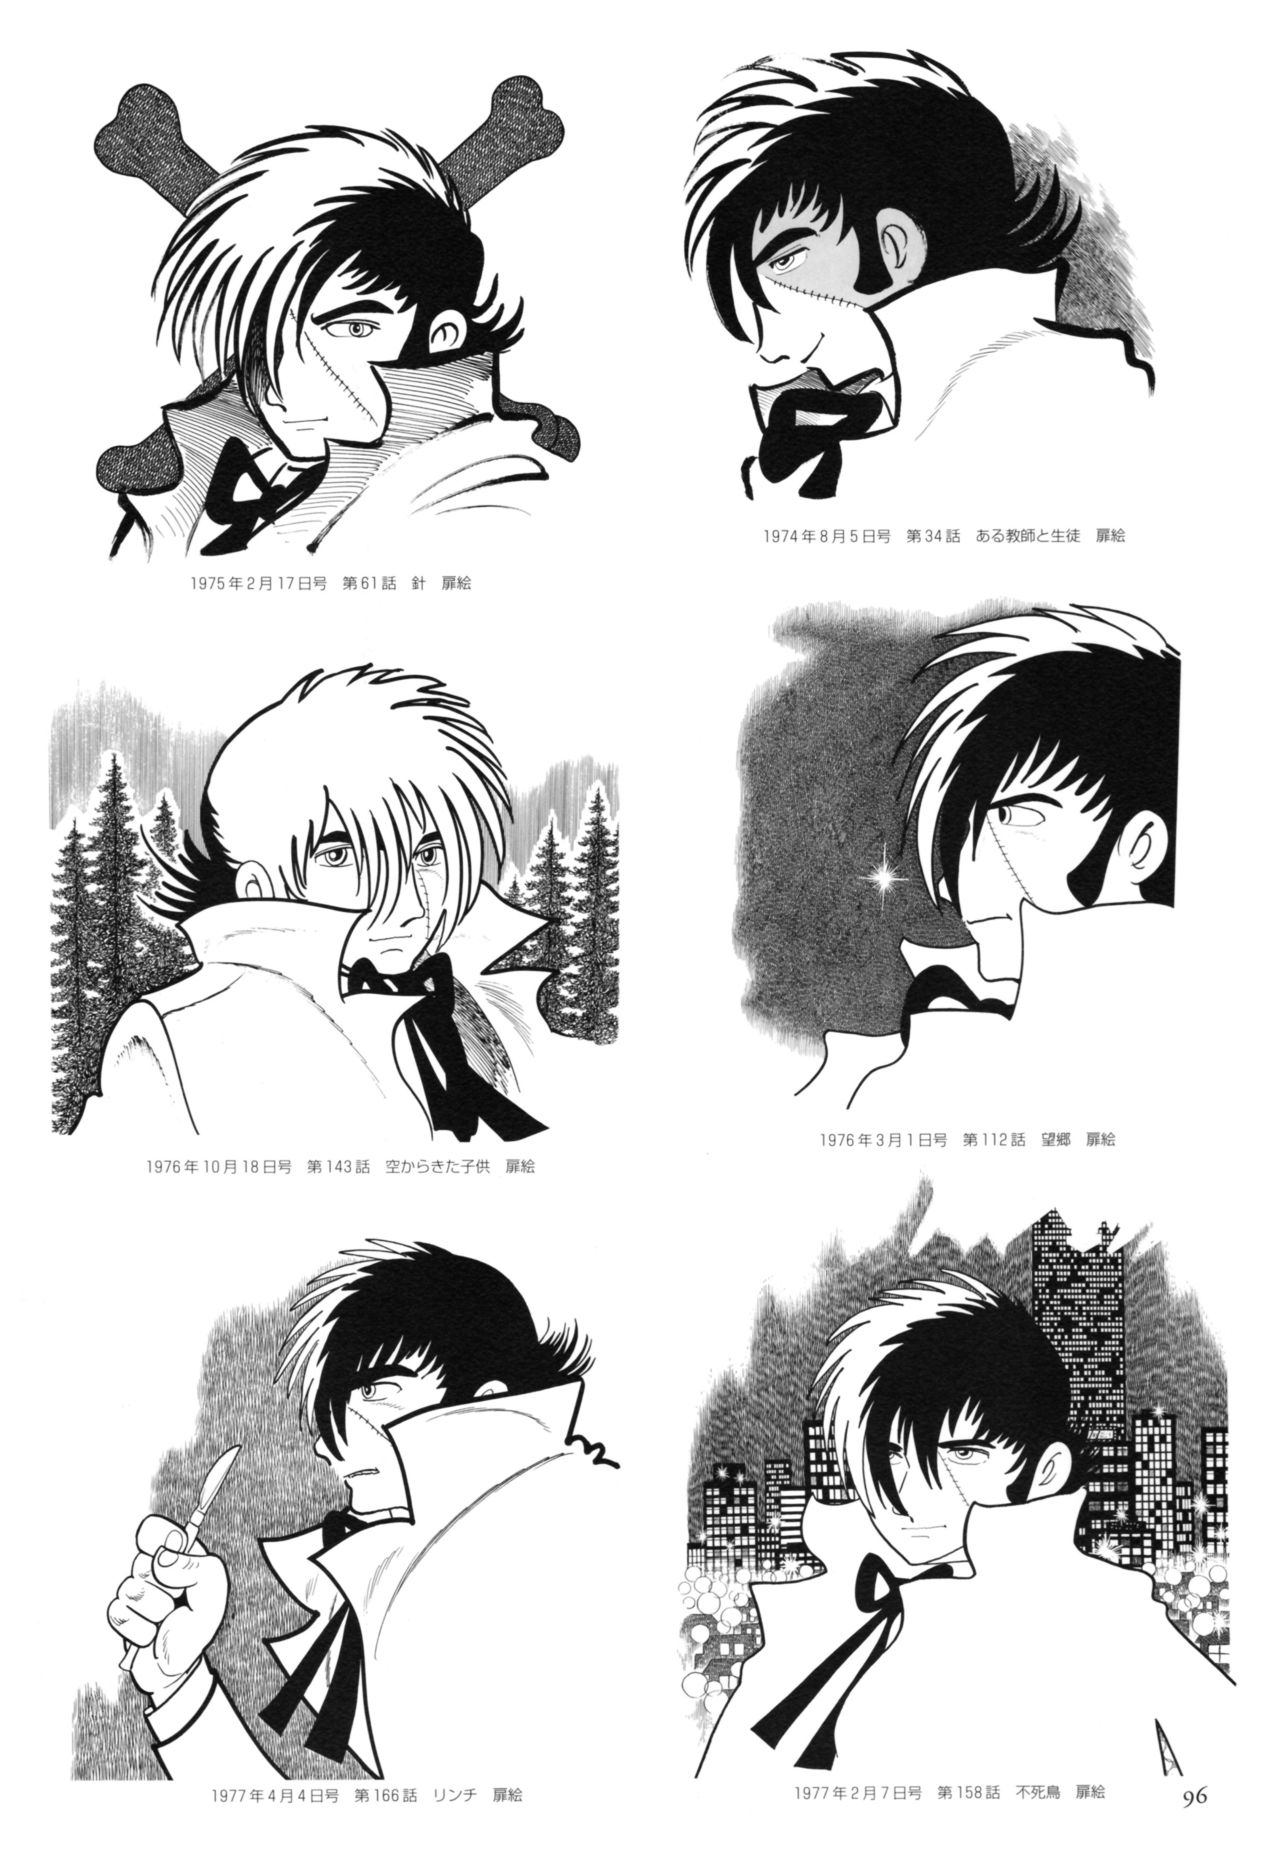 All of Black Jack By Osamu Tezuka 100